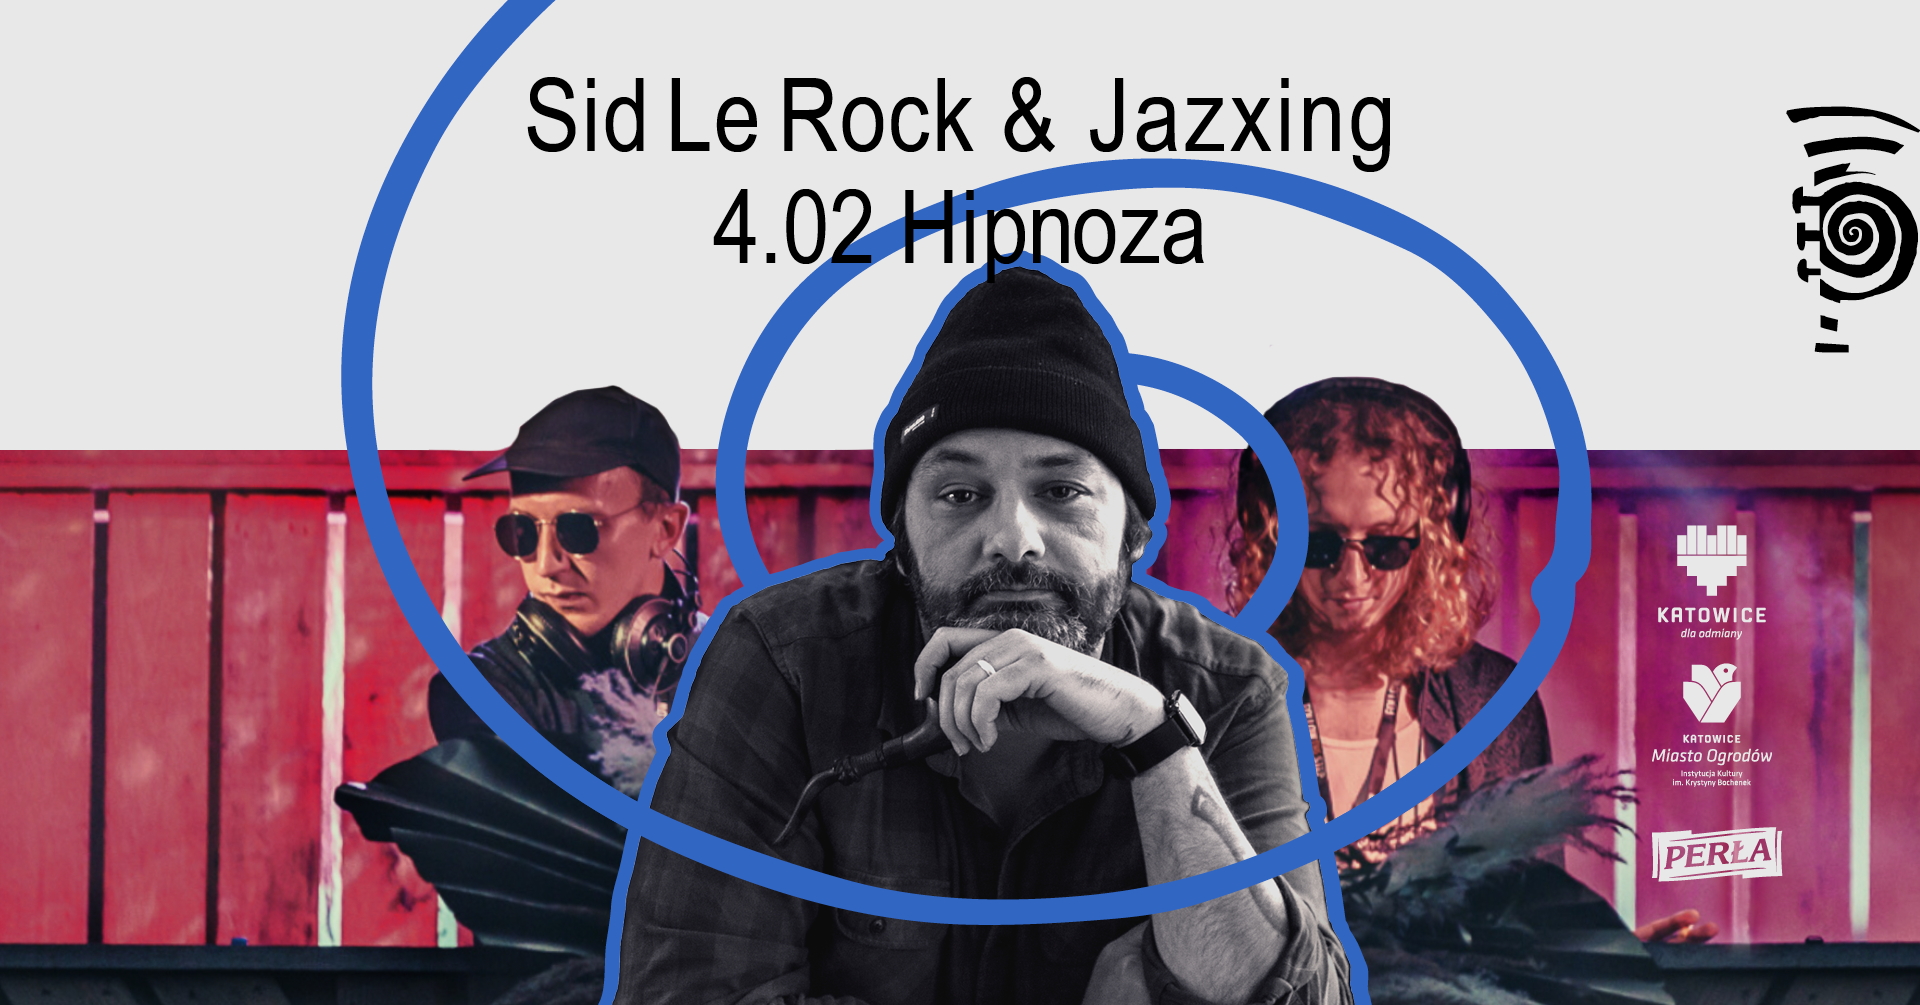 SID LE ROCK & JAZXING